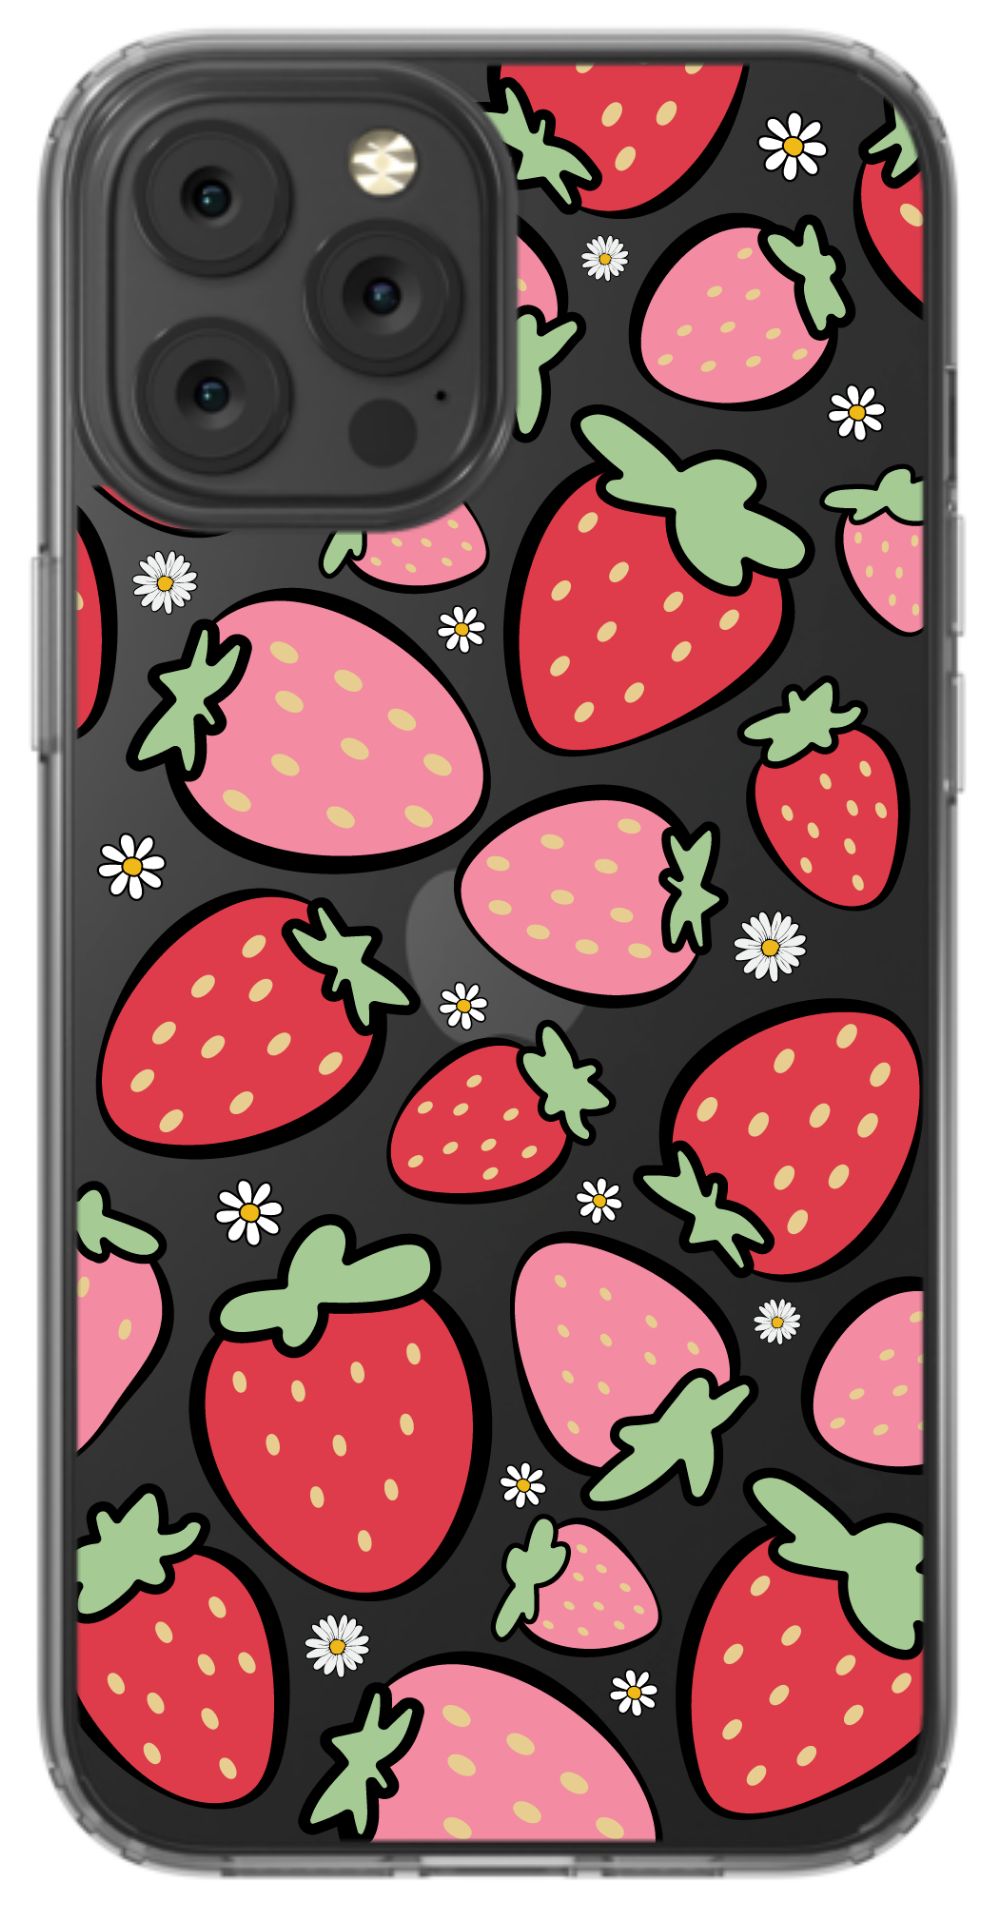 Strawberry Daisy - daziecases